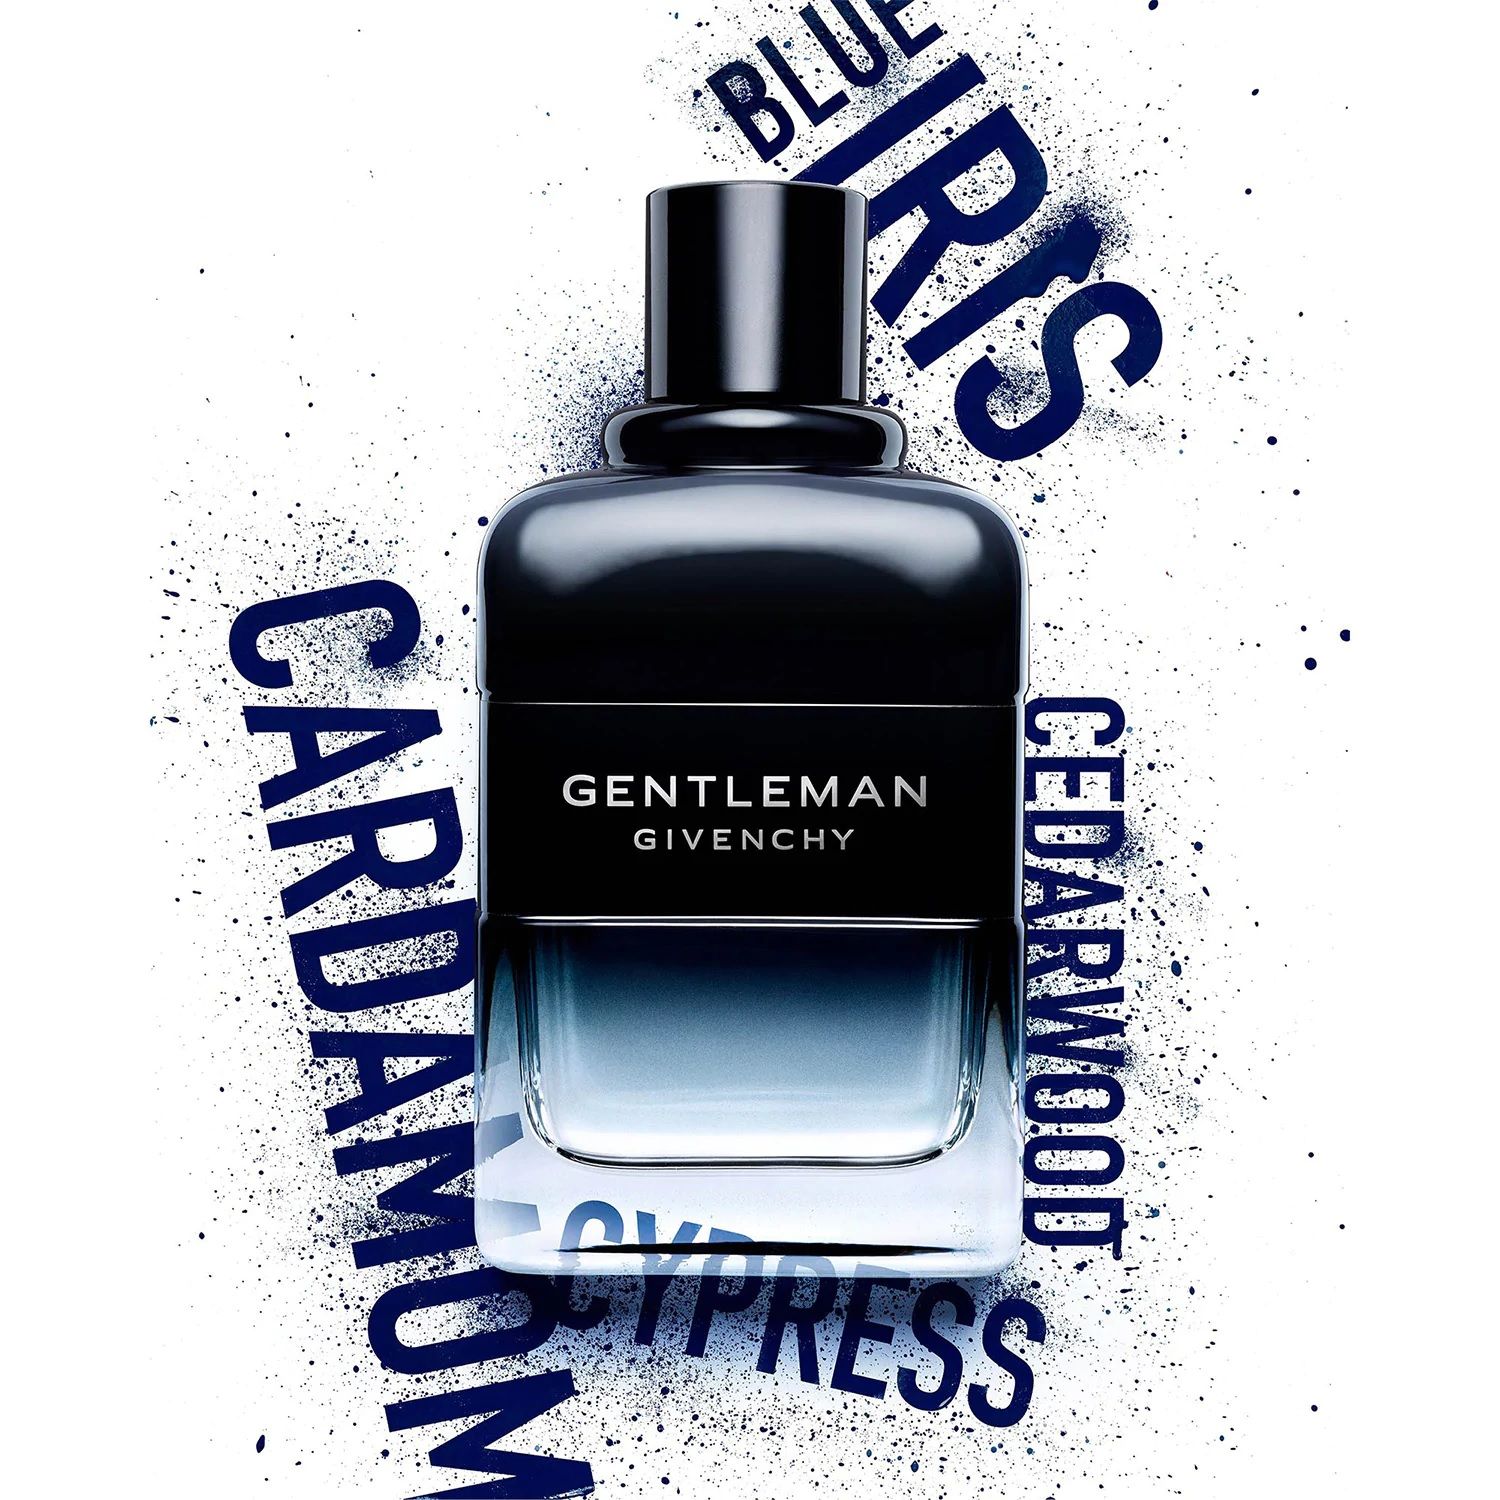 Gentleman Eau De Toilette Intense Givenchy Cologne - A New Fragrance 5E0